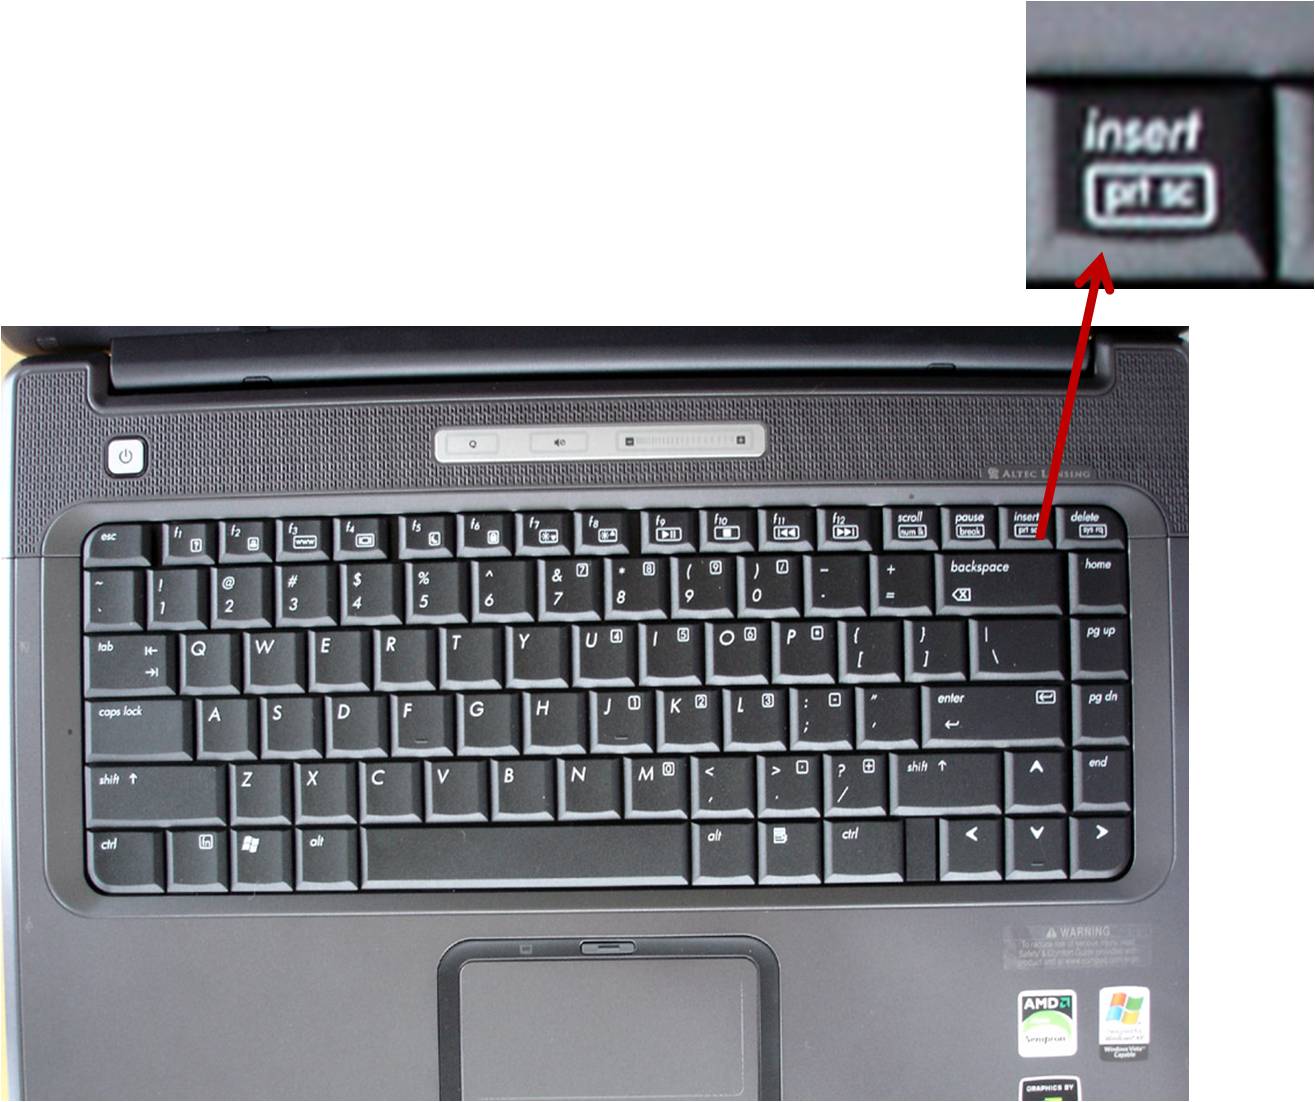 Нажать клавишу insert. Клавиша Insert на клавиатуре ноутбука Acer. Клавиша Insert на ноутбуке Acer.